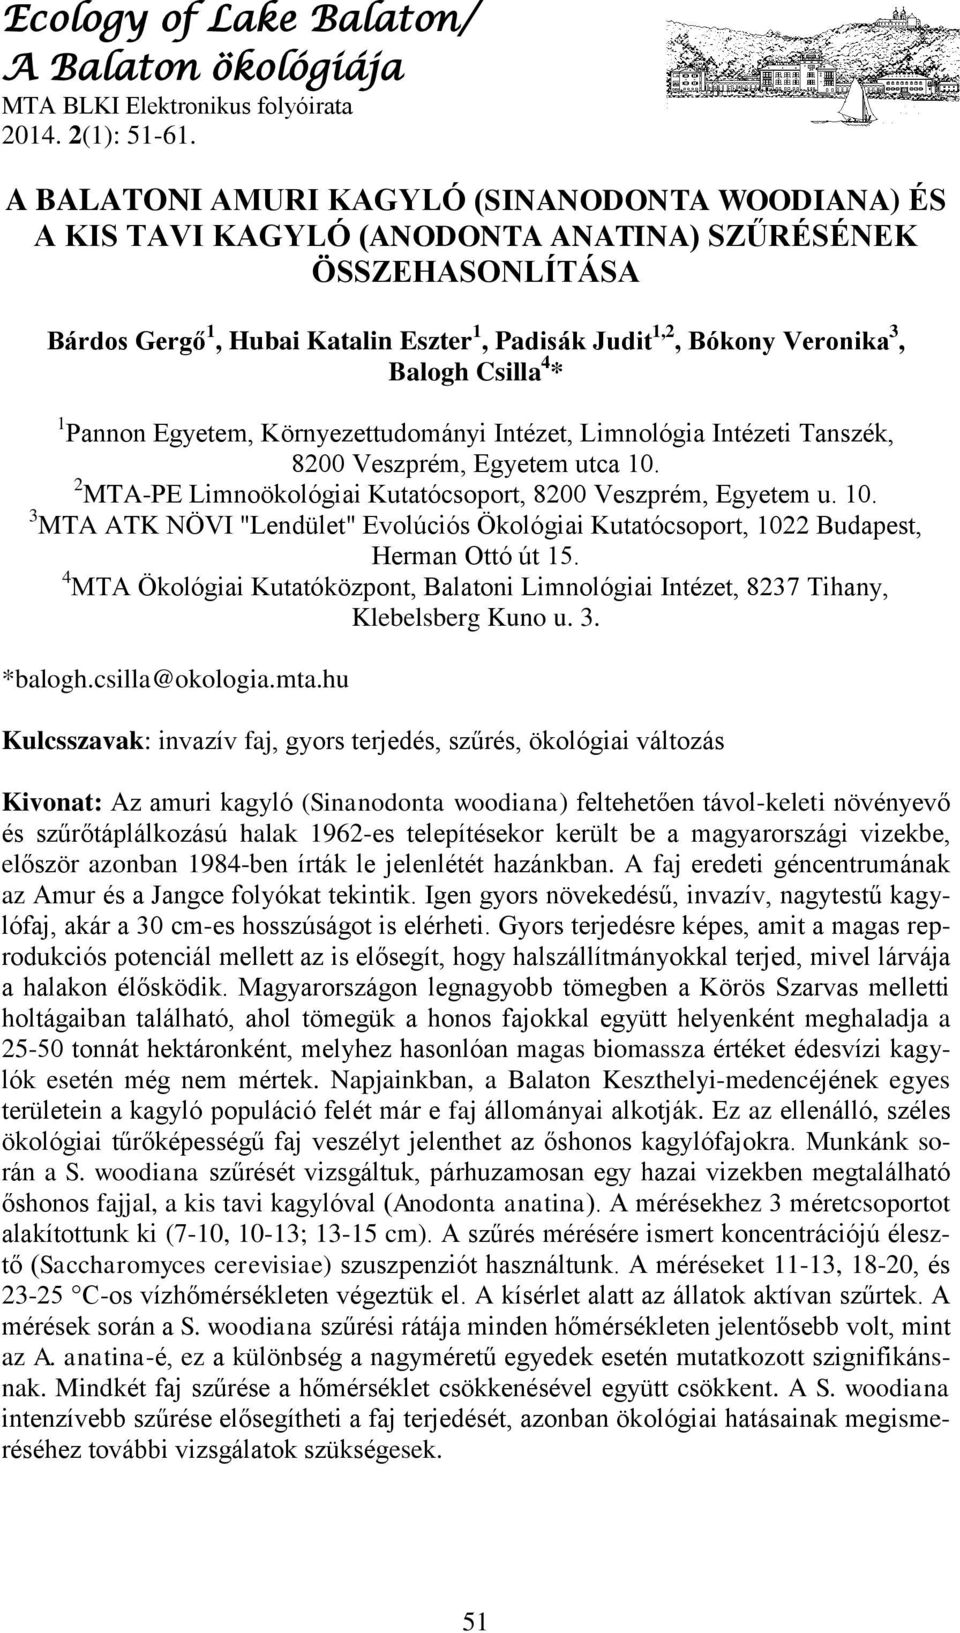 Ecology of Lake Balaton/ A Balaton ökológiája - PDF Ingyenes letöltés